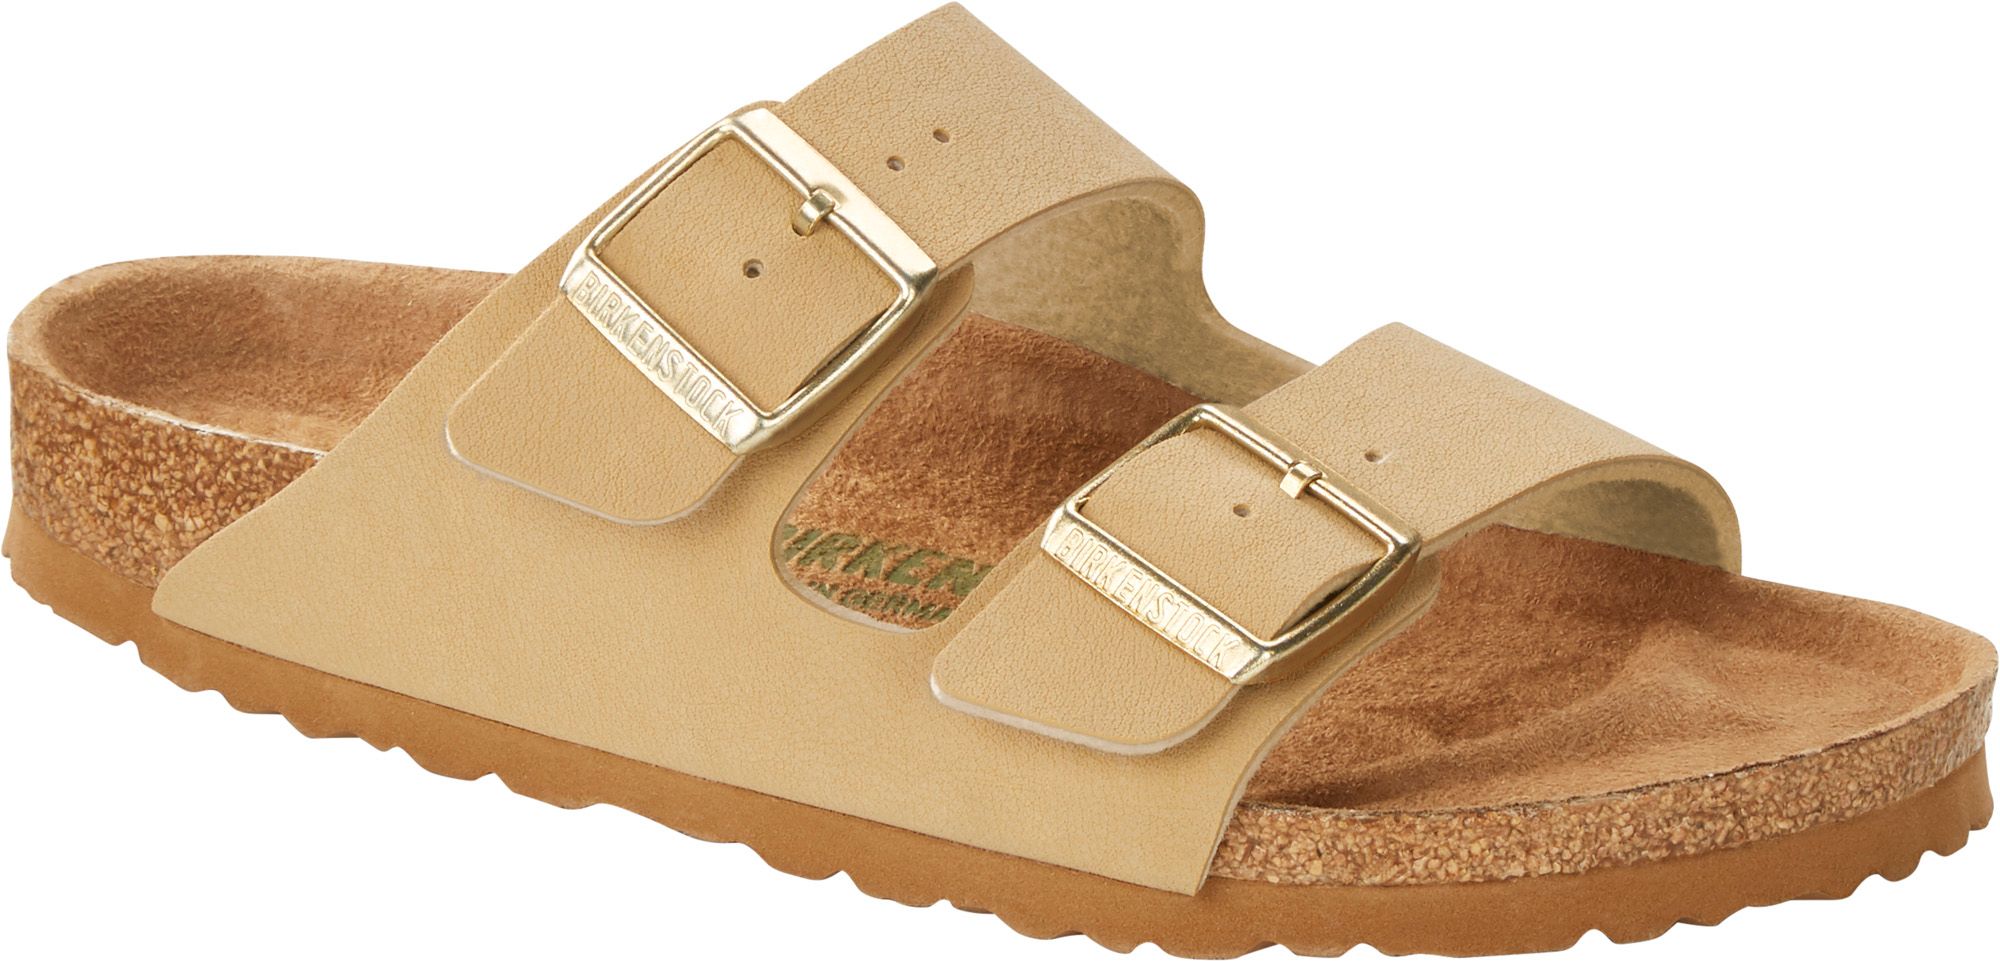 birkenstock arizona vegan sandals